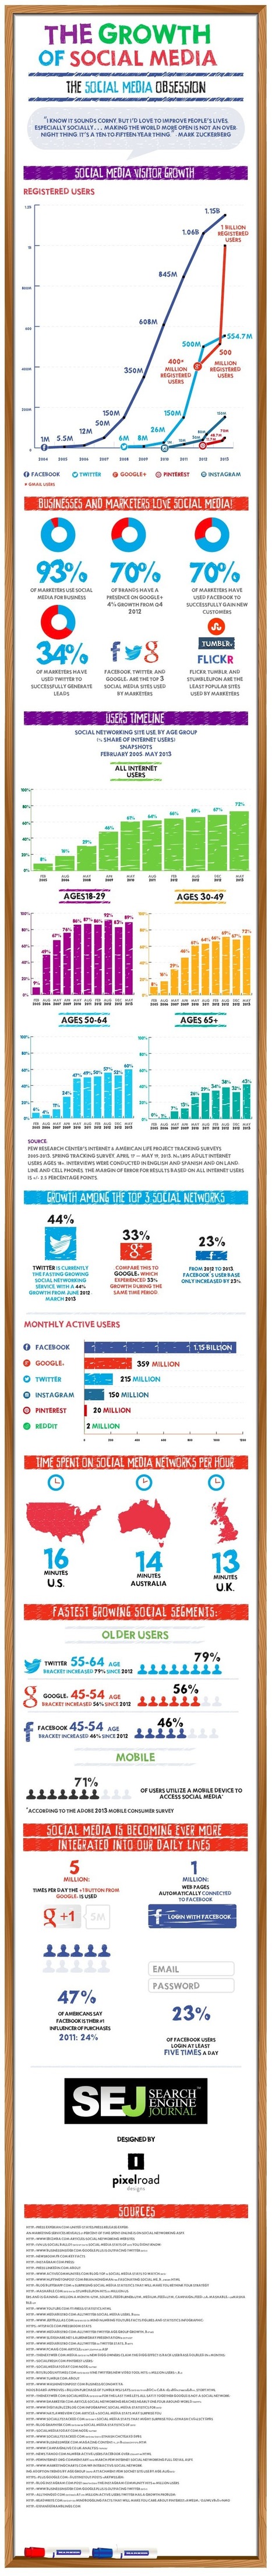 El crecimiento de las Redes Sociales #infografia #infographic #socialmedia | Seo, Social Media Marketing | Scoop.it